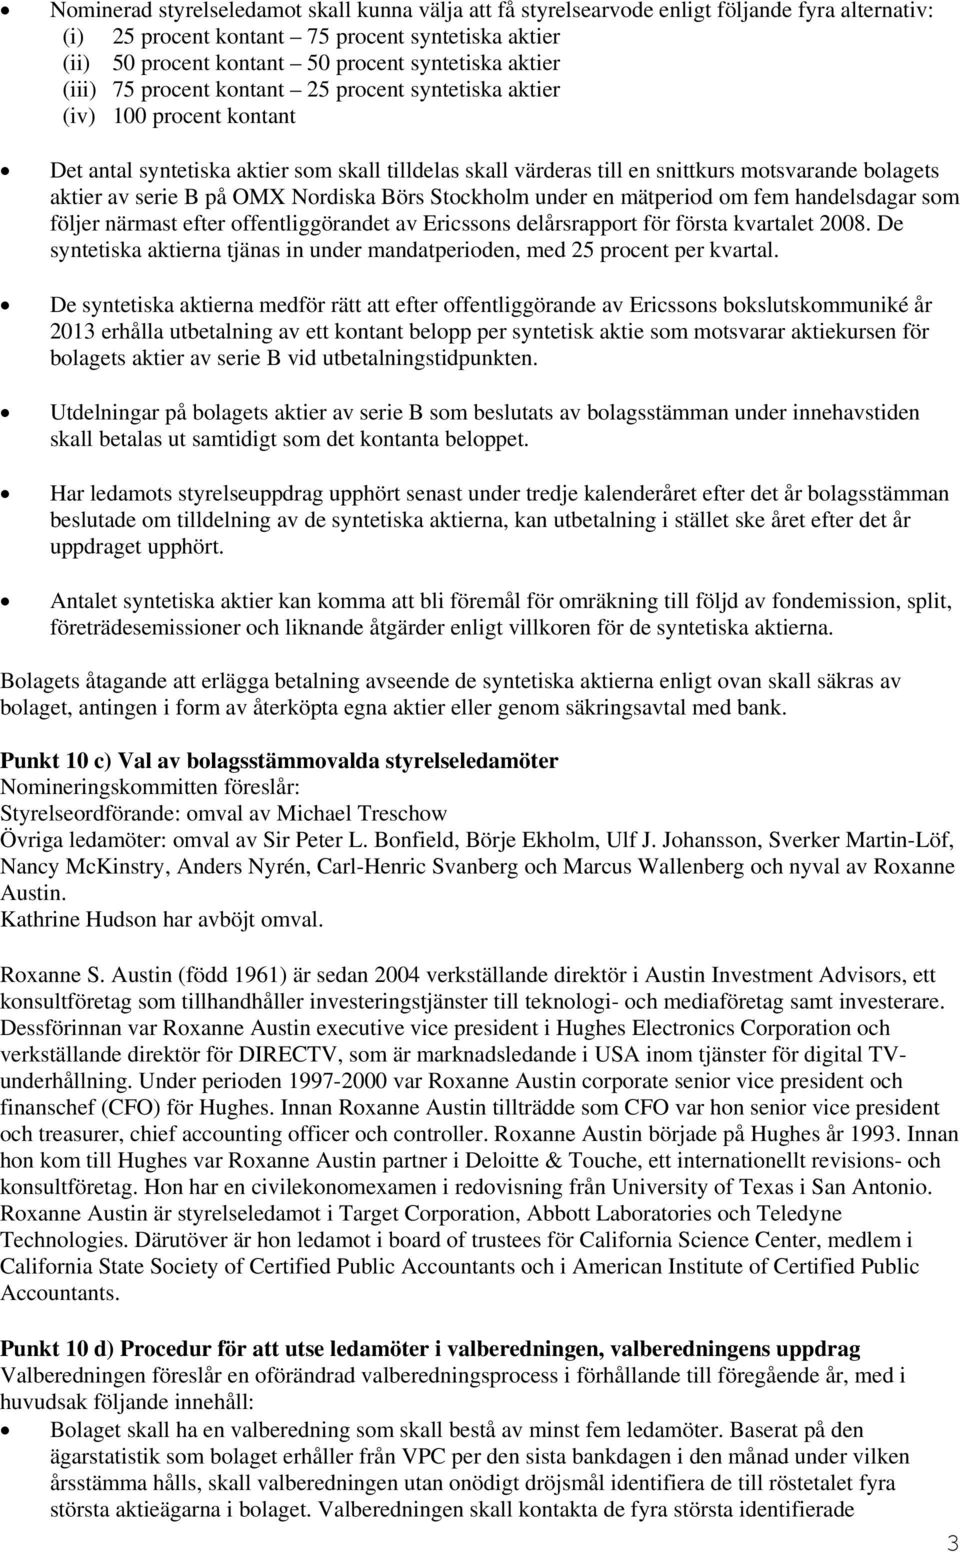 serie B på OMX Nordiska Börs Stockholm under en mätperiod om fem handelsdagar som följer närmast efter offentliggörandet av Ericssons delårsrapport för första kvartalet 2008.